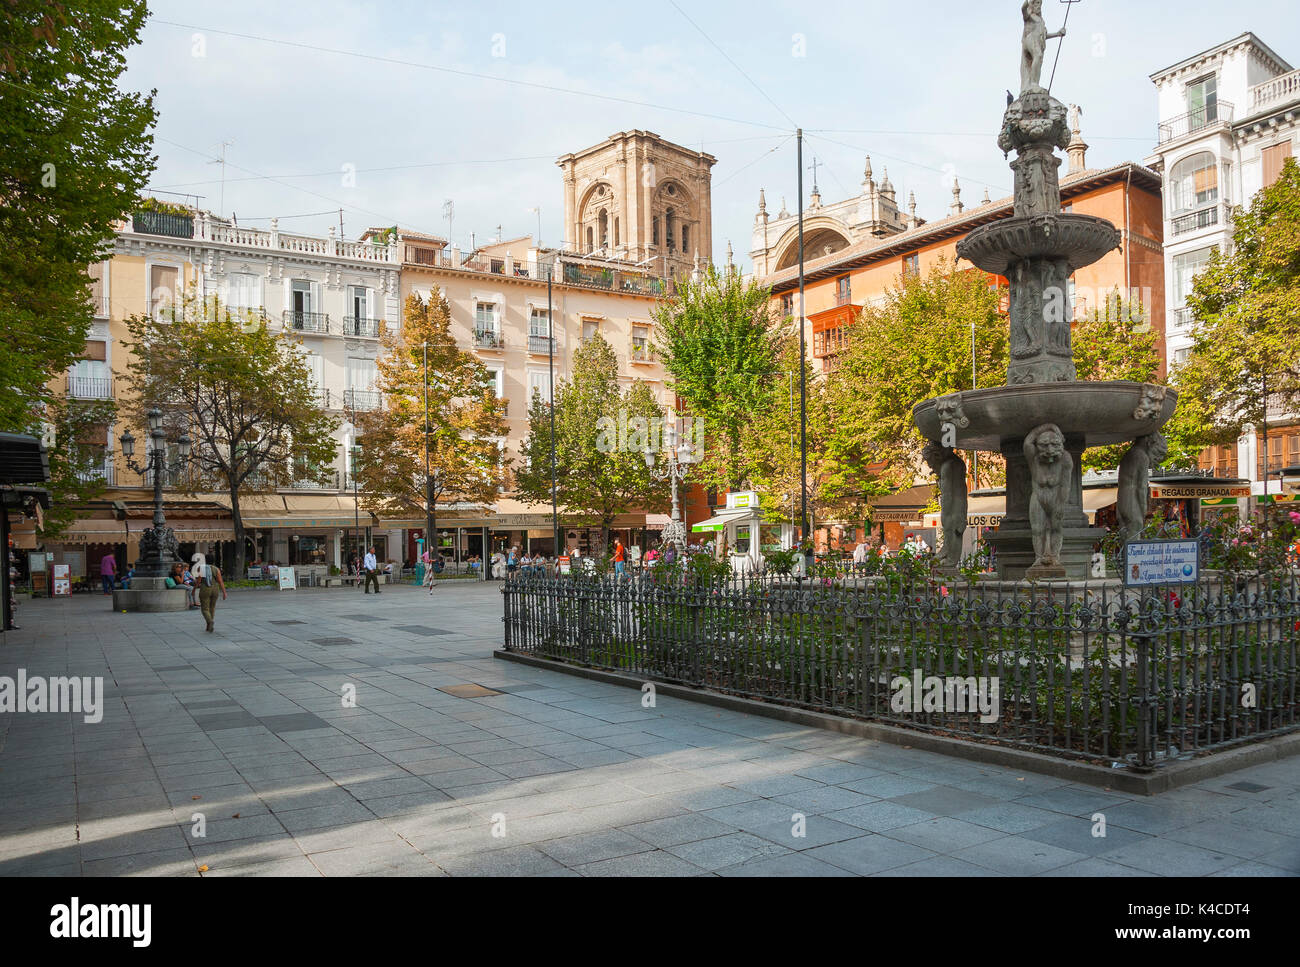 Plaza Bib, Rambla, Square With Fountain In The Center Of Granada,  Andalusia, Spain Stock Photo - Alamy